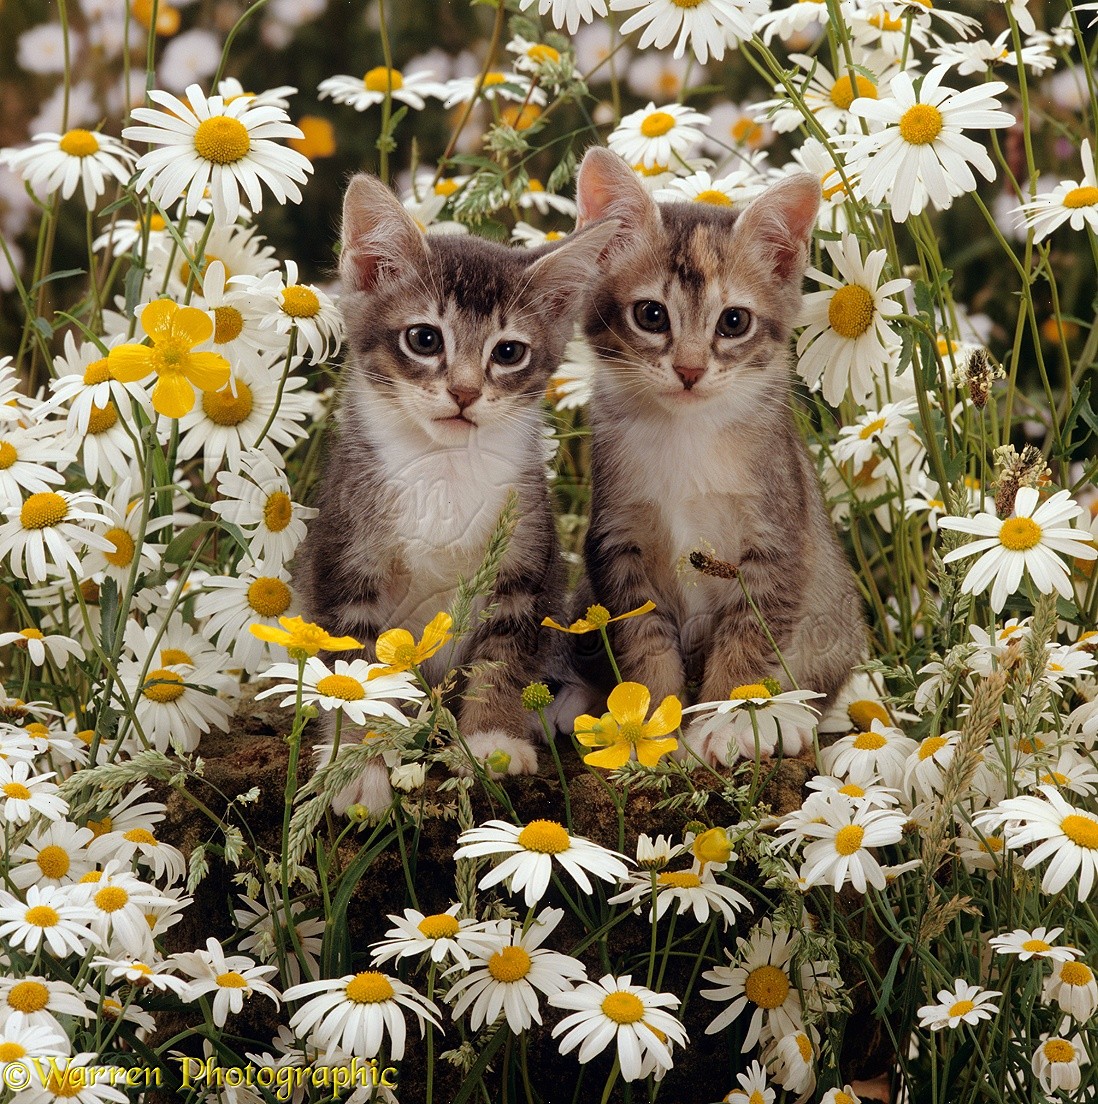 15895 Burmese cross kittens among meadow flowers